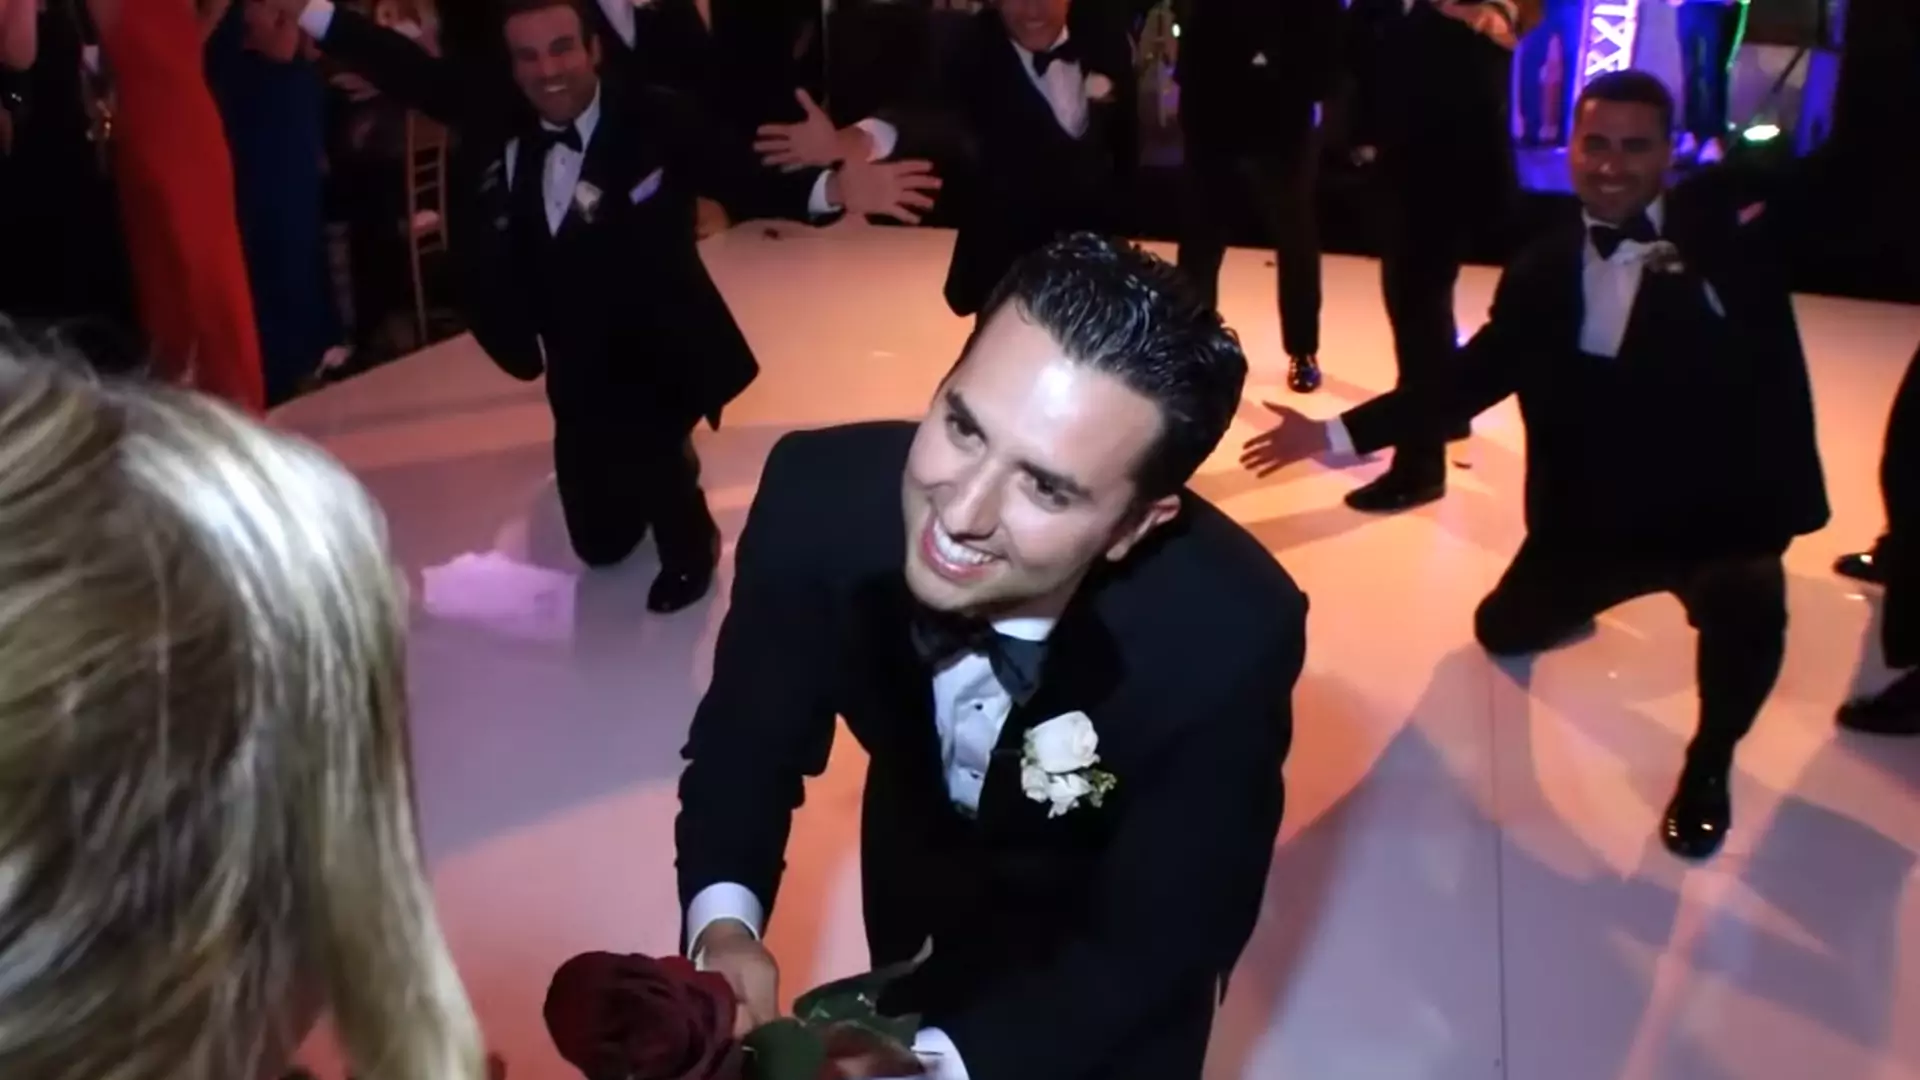 Chirurg ortopeda zatańczył dla żony na weselu. Nagranie błyskawicznie stało się hitem